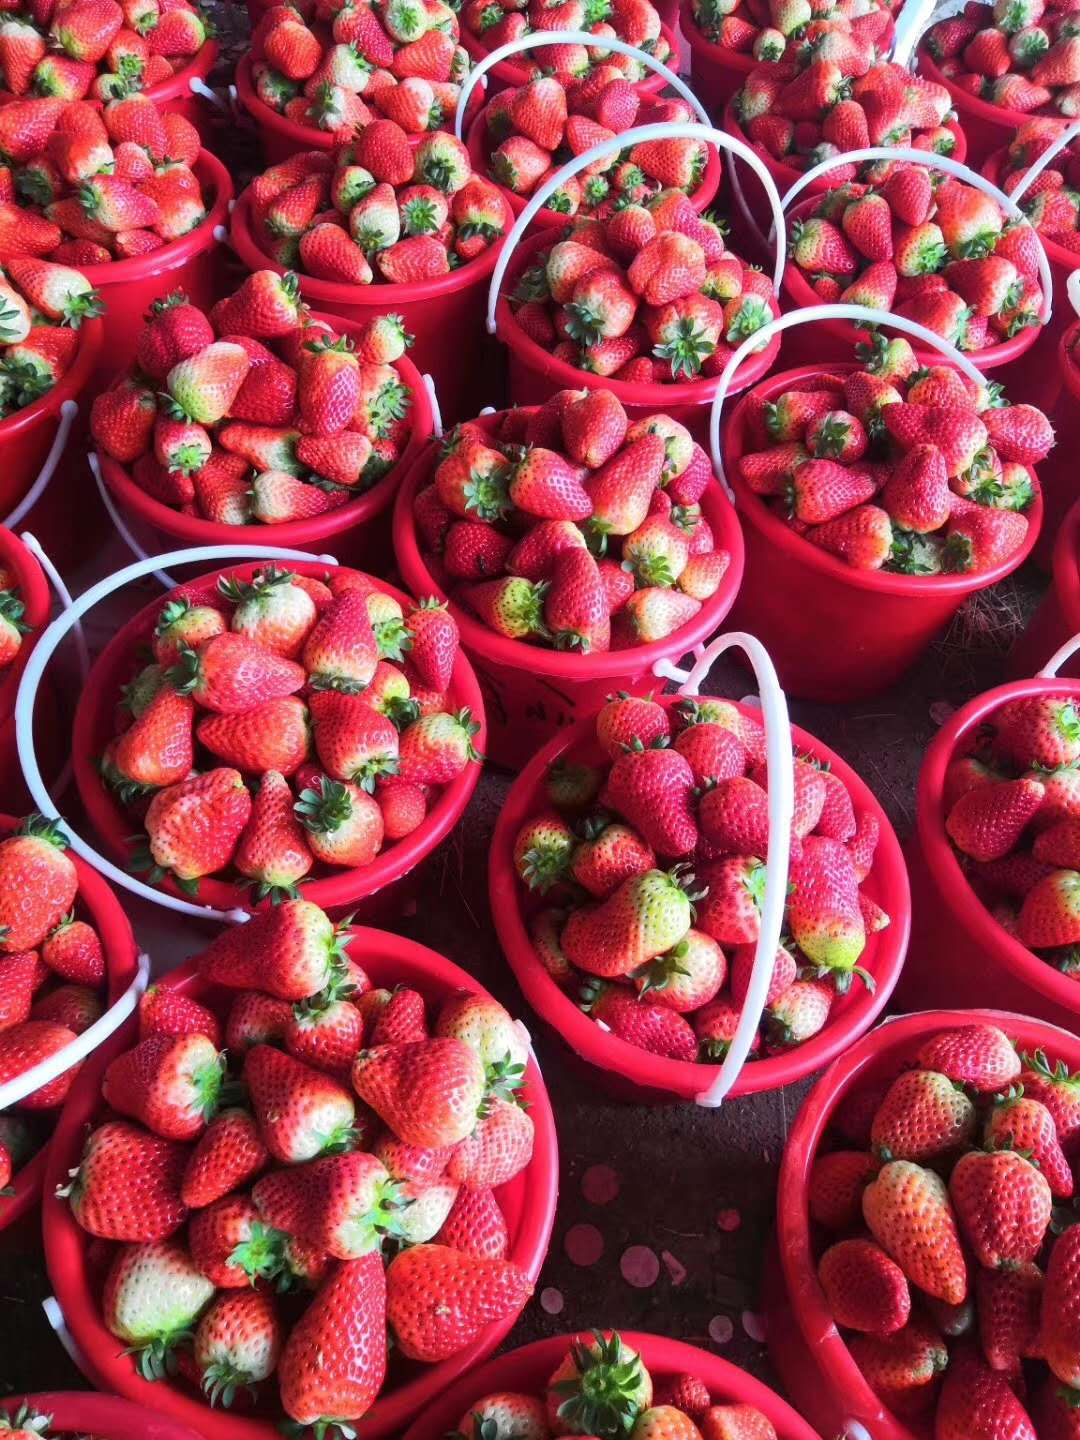 蒙特瑞草莓苗基地蒙特瑞草莓苗品种